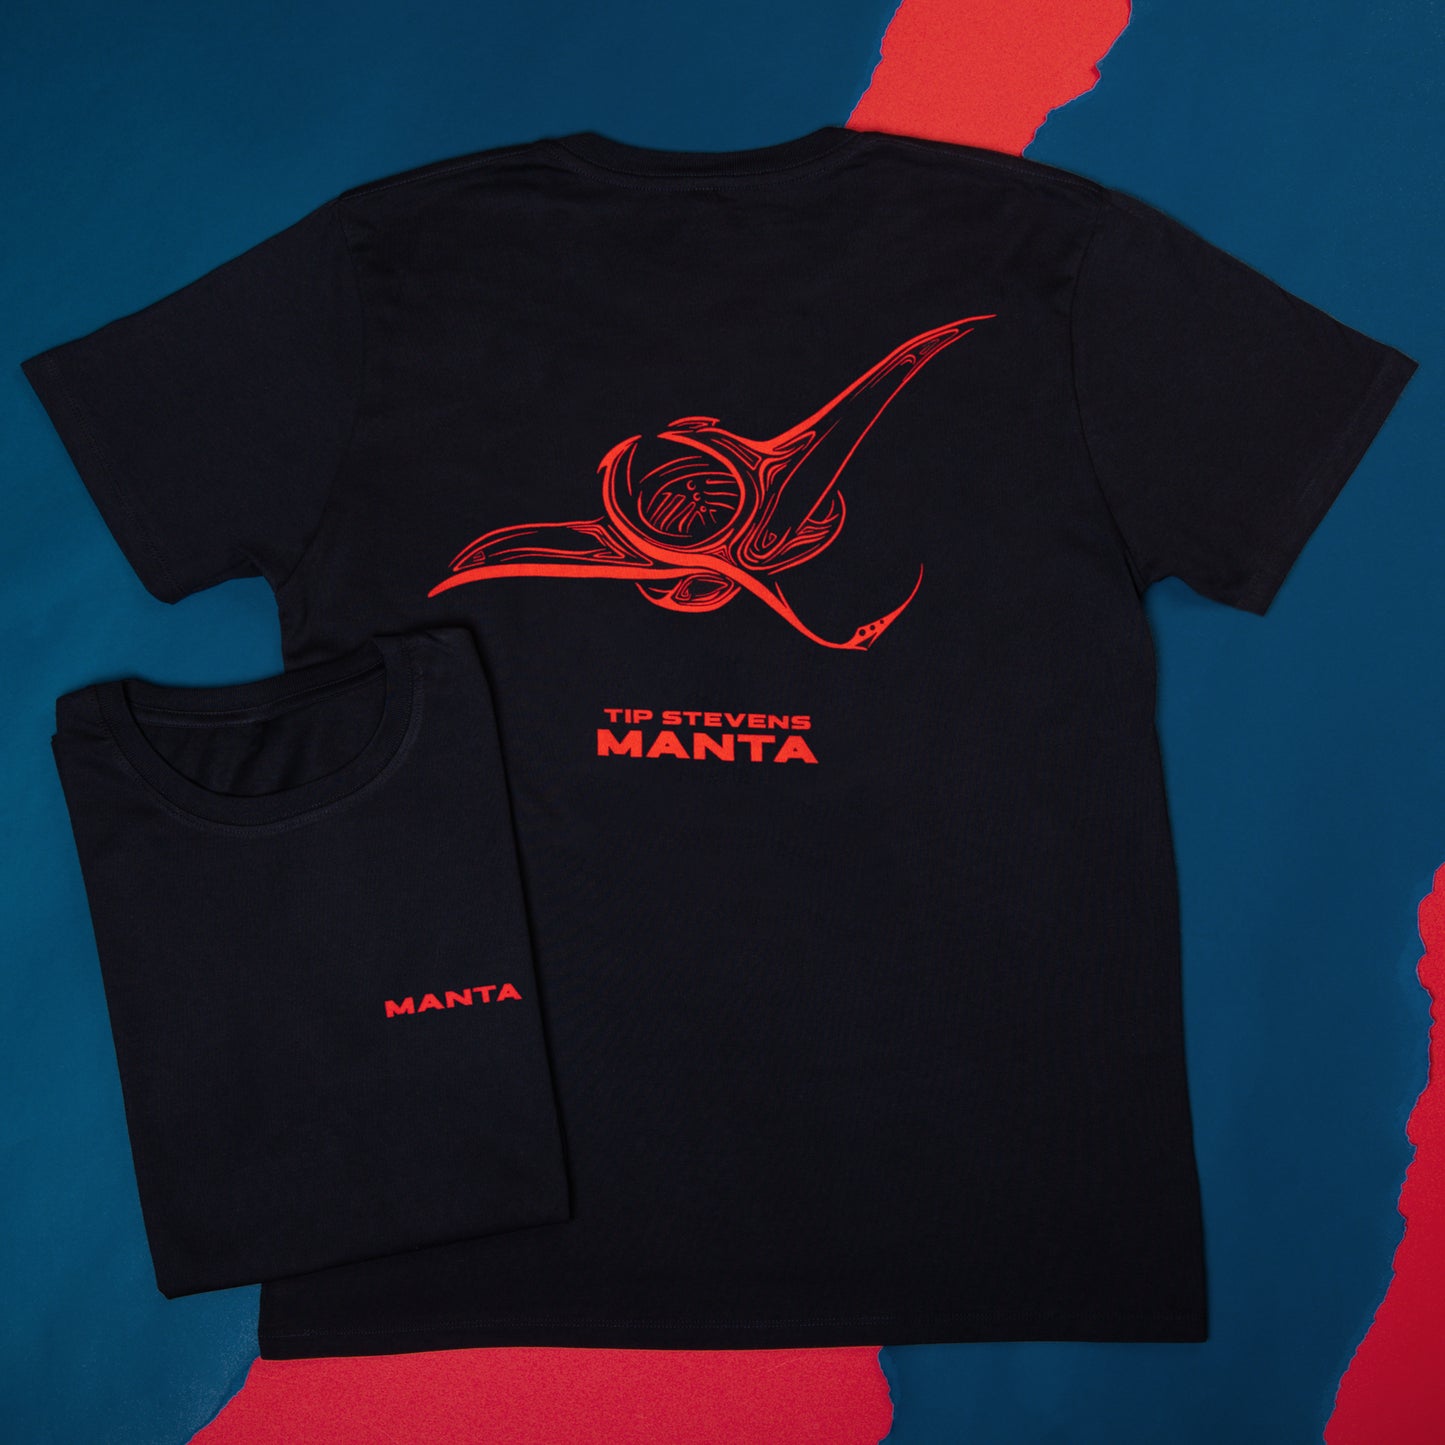 T-Shirt - Tip Stevens - Manta